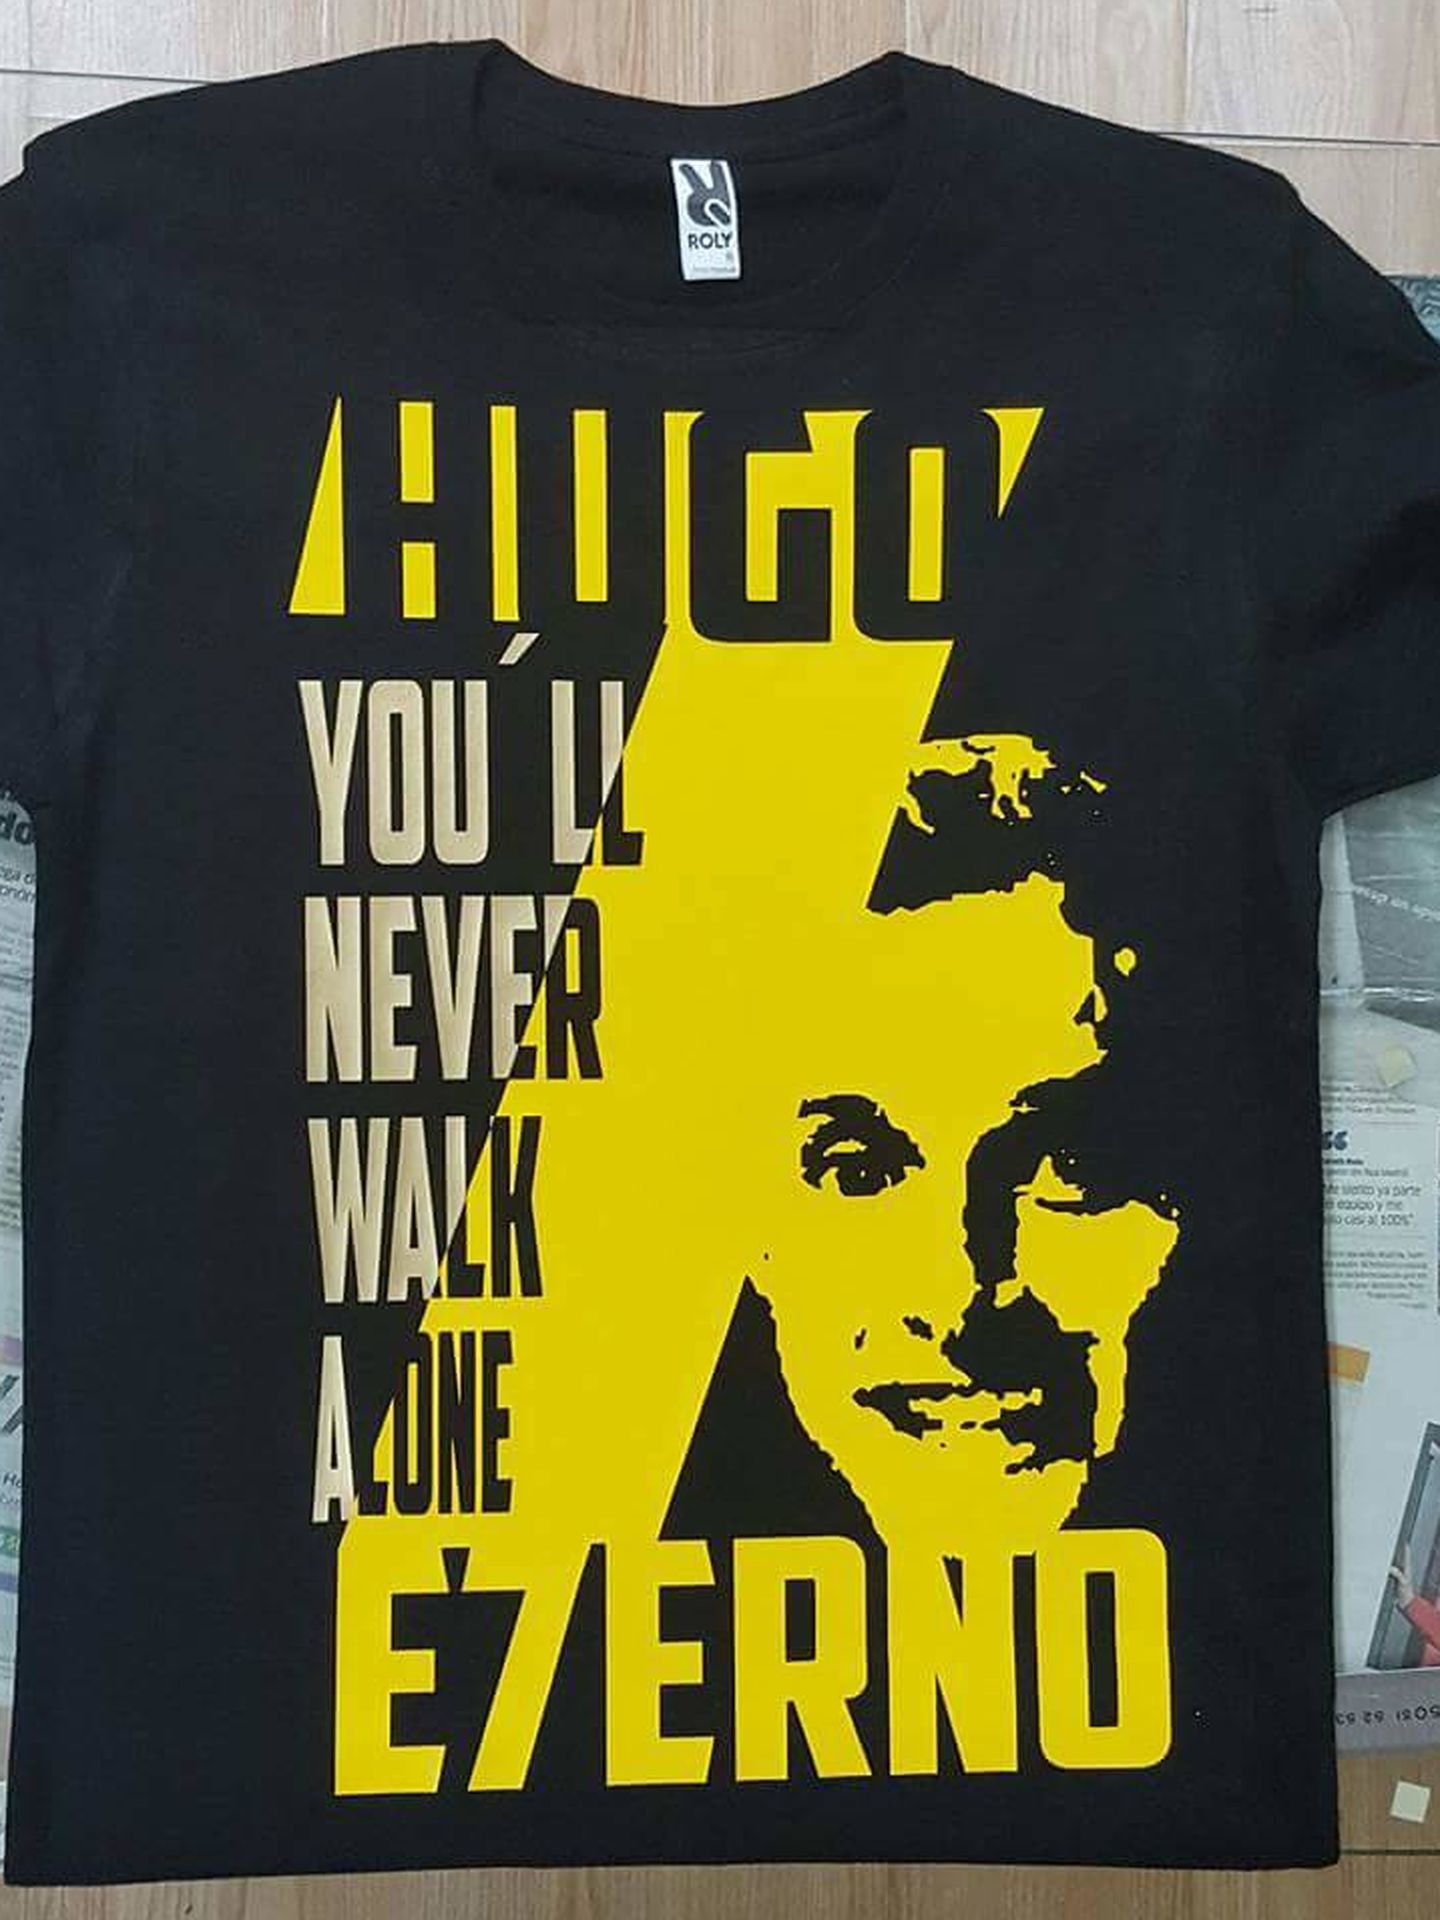 Camiseta en memoria de Hugo.